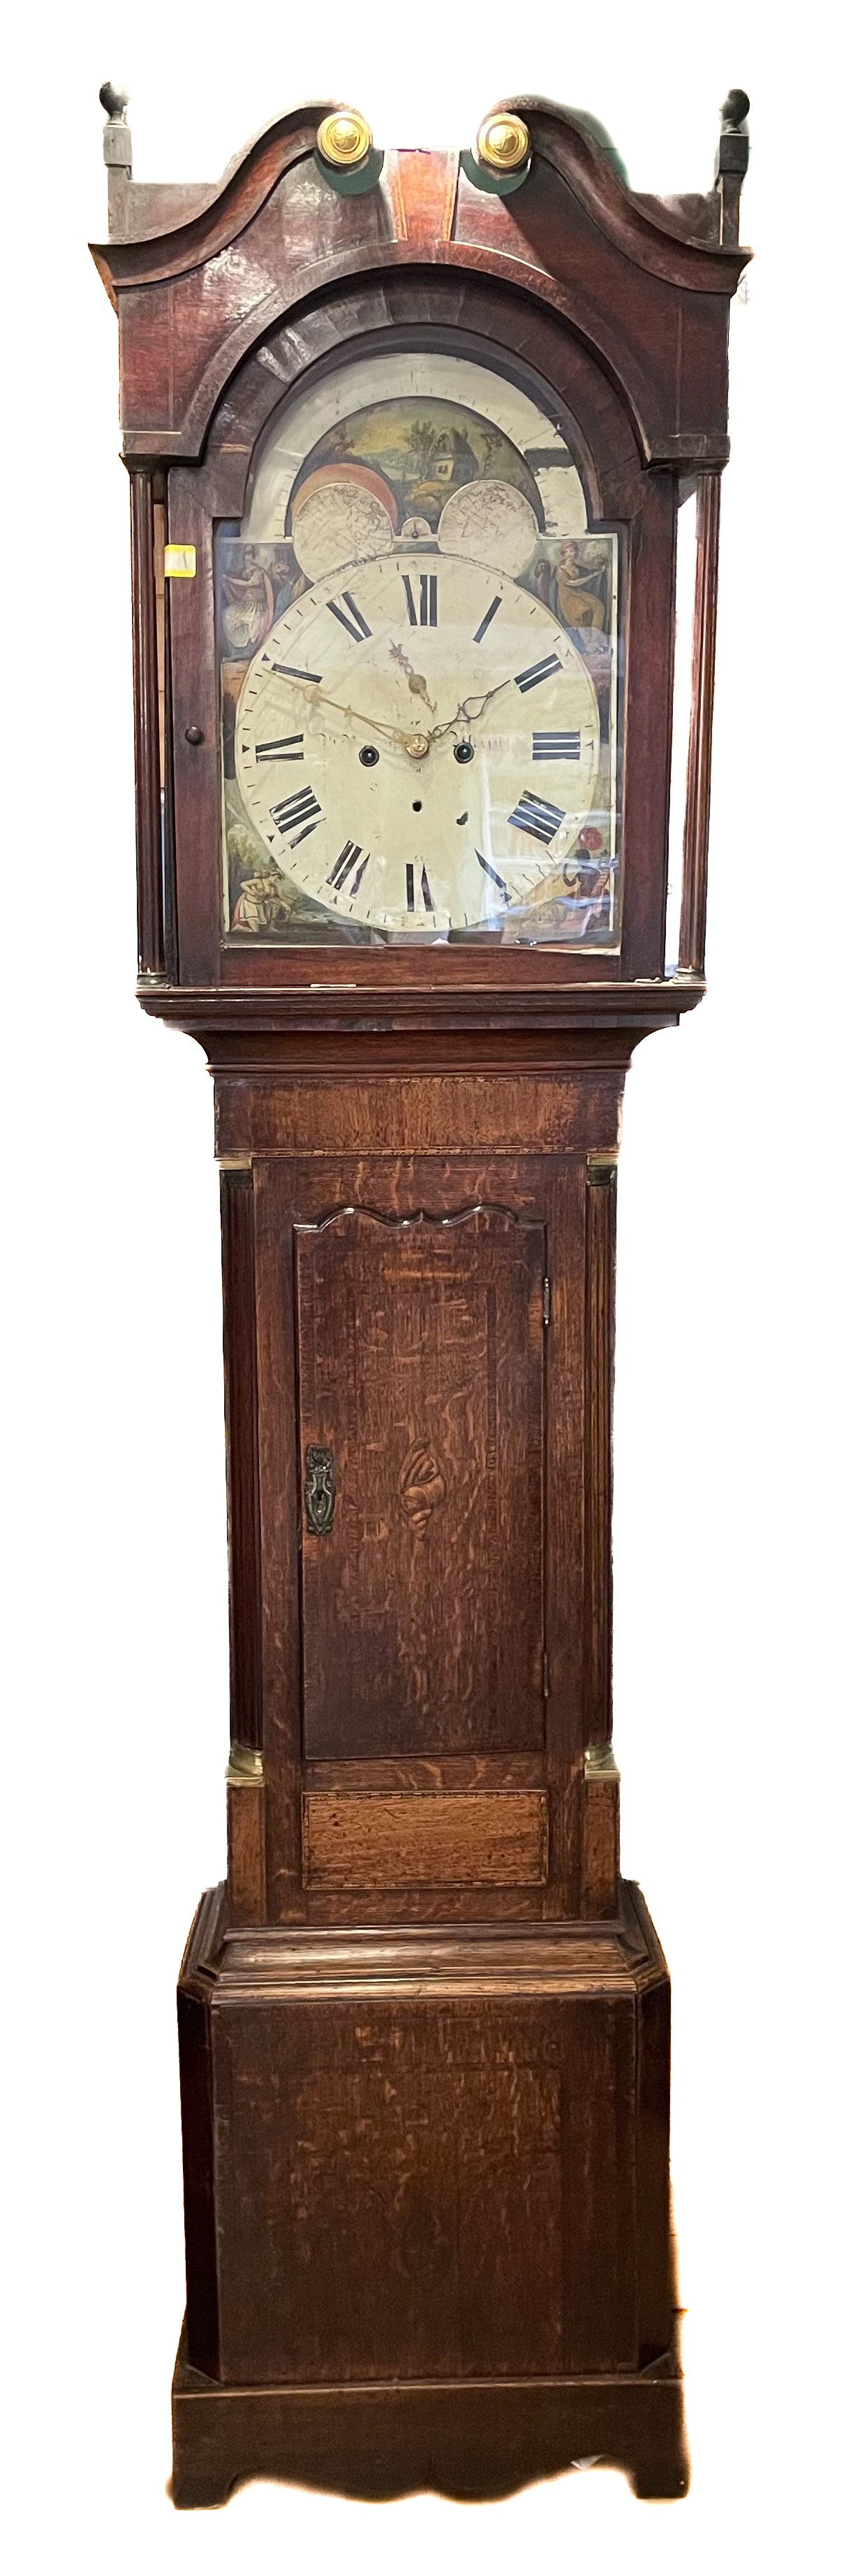 Thomas Earp, Kegworth, Leics, a Georgian eight day painted 13" dial mahogany and oak longcase clock,